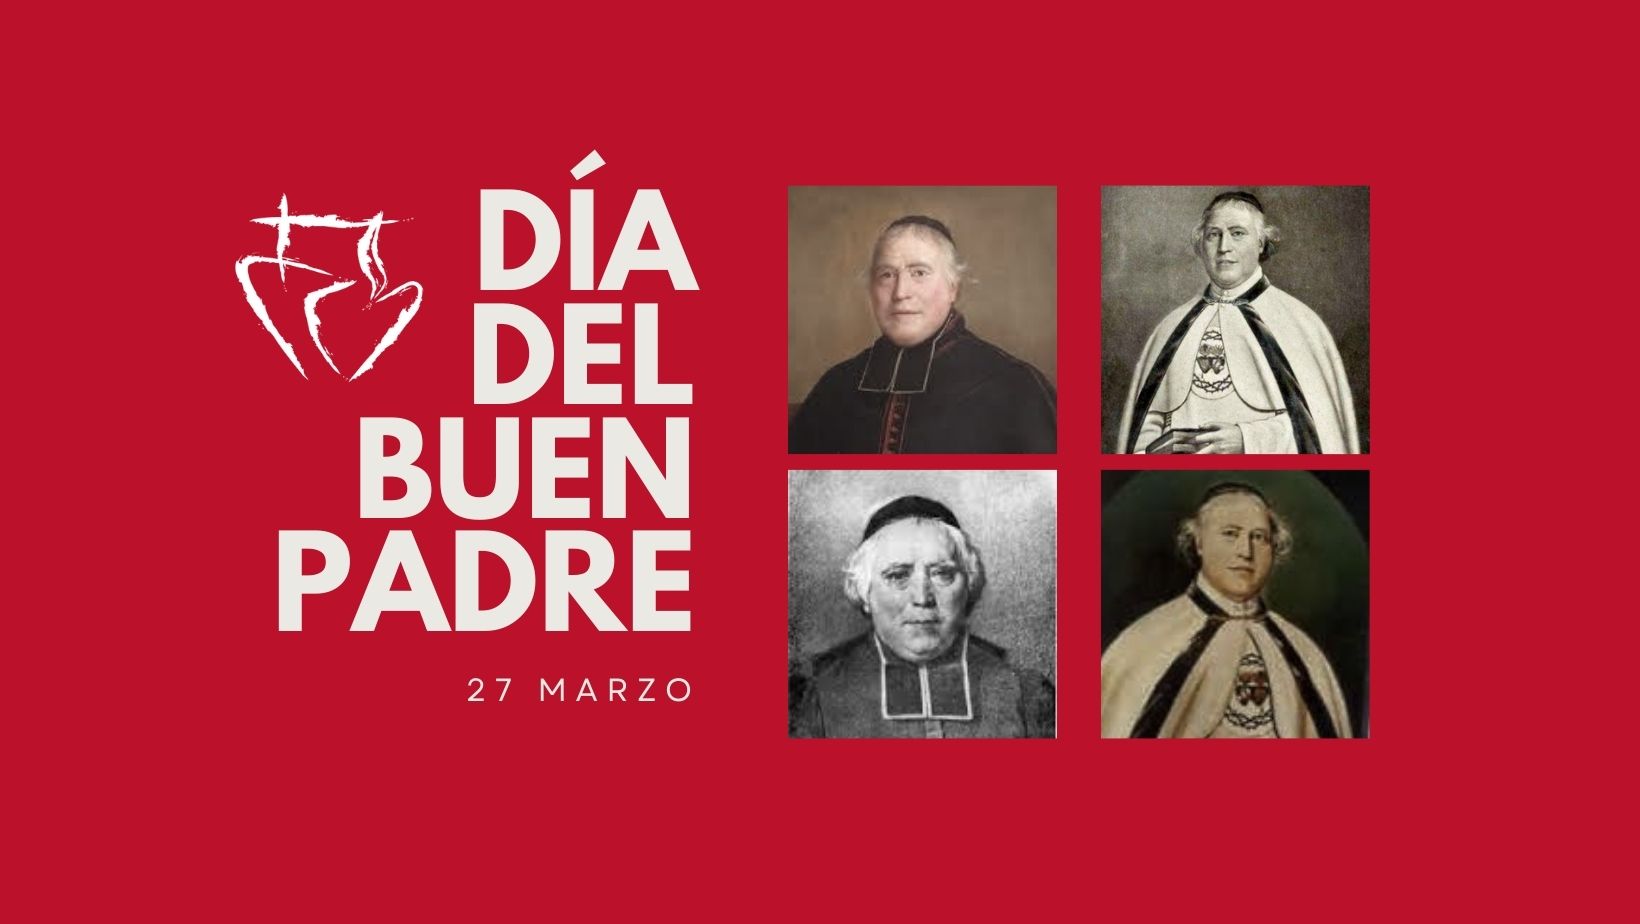 El 27 de marzo se celebra el Día del Buen Padre, fundador de la Congregación de los Sagrados Corazones